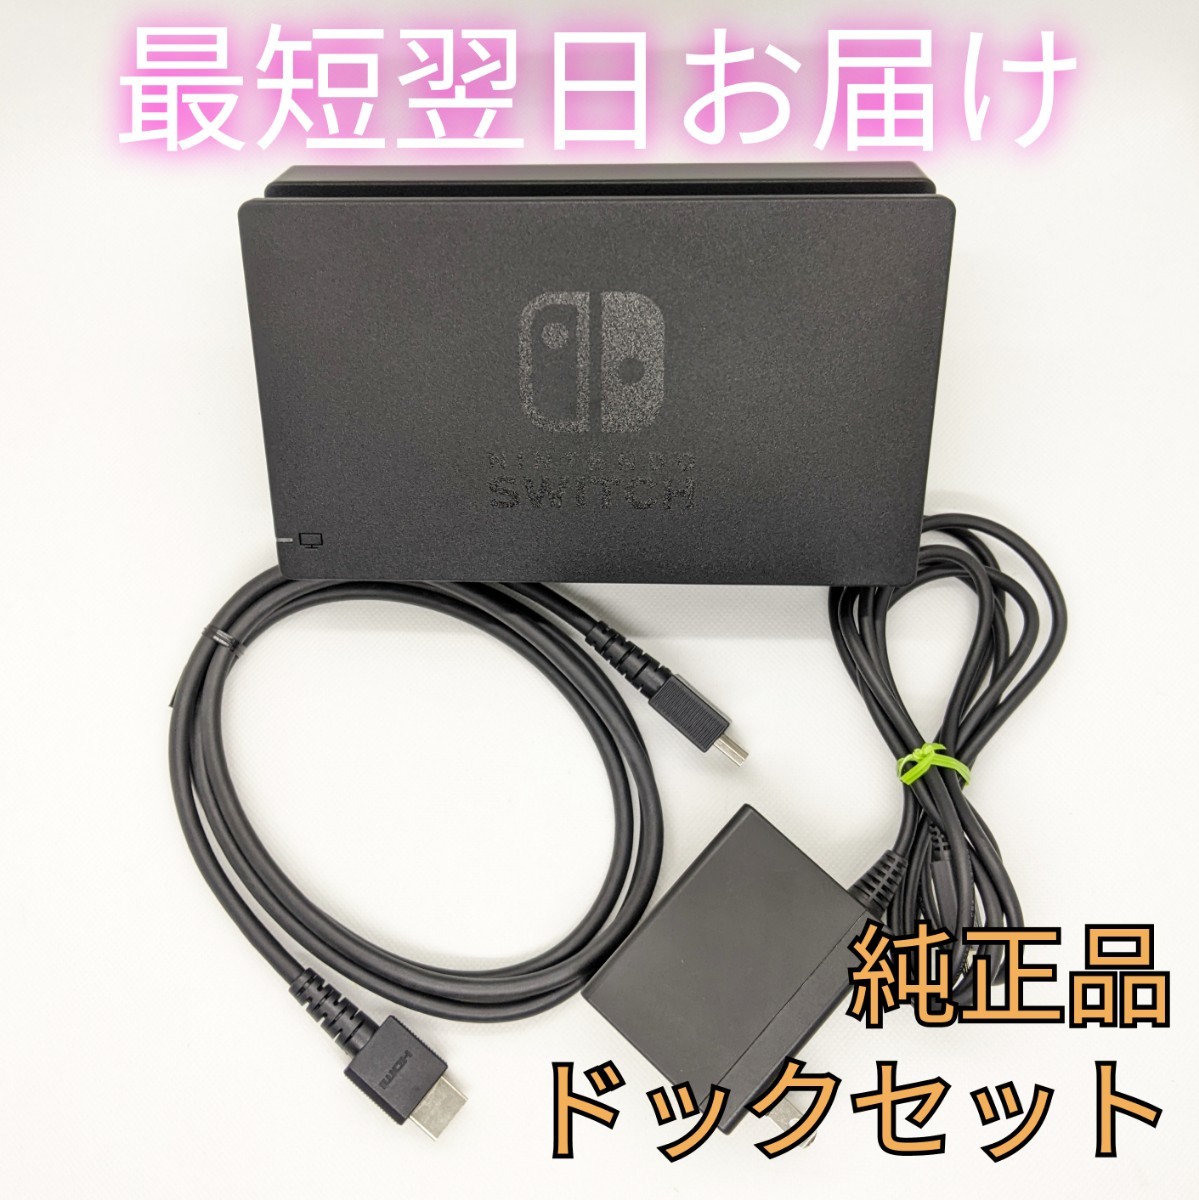 30%OFF SALE セール Nintendo Switch 純正 ドック HDMI アダプター 